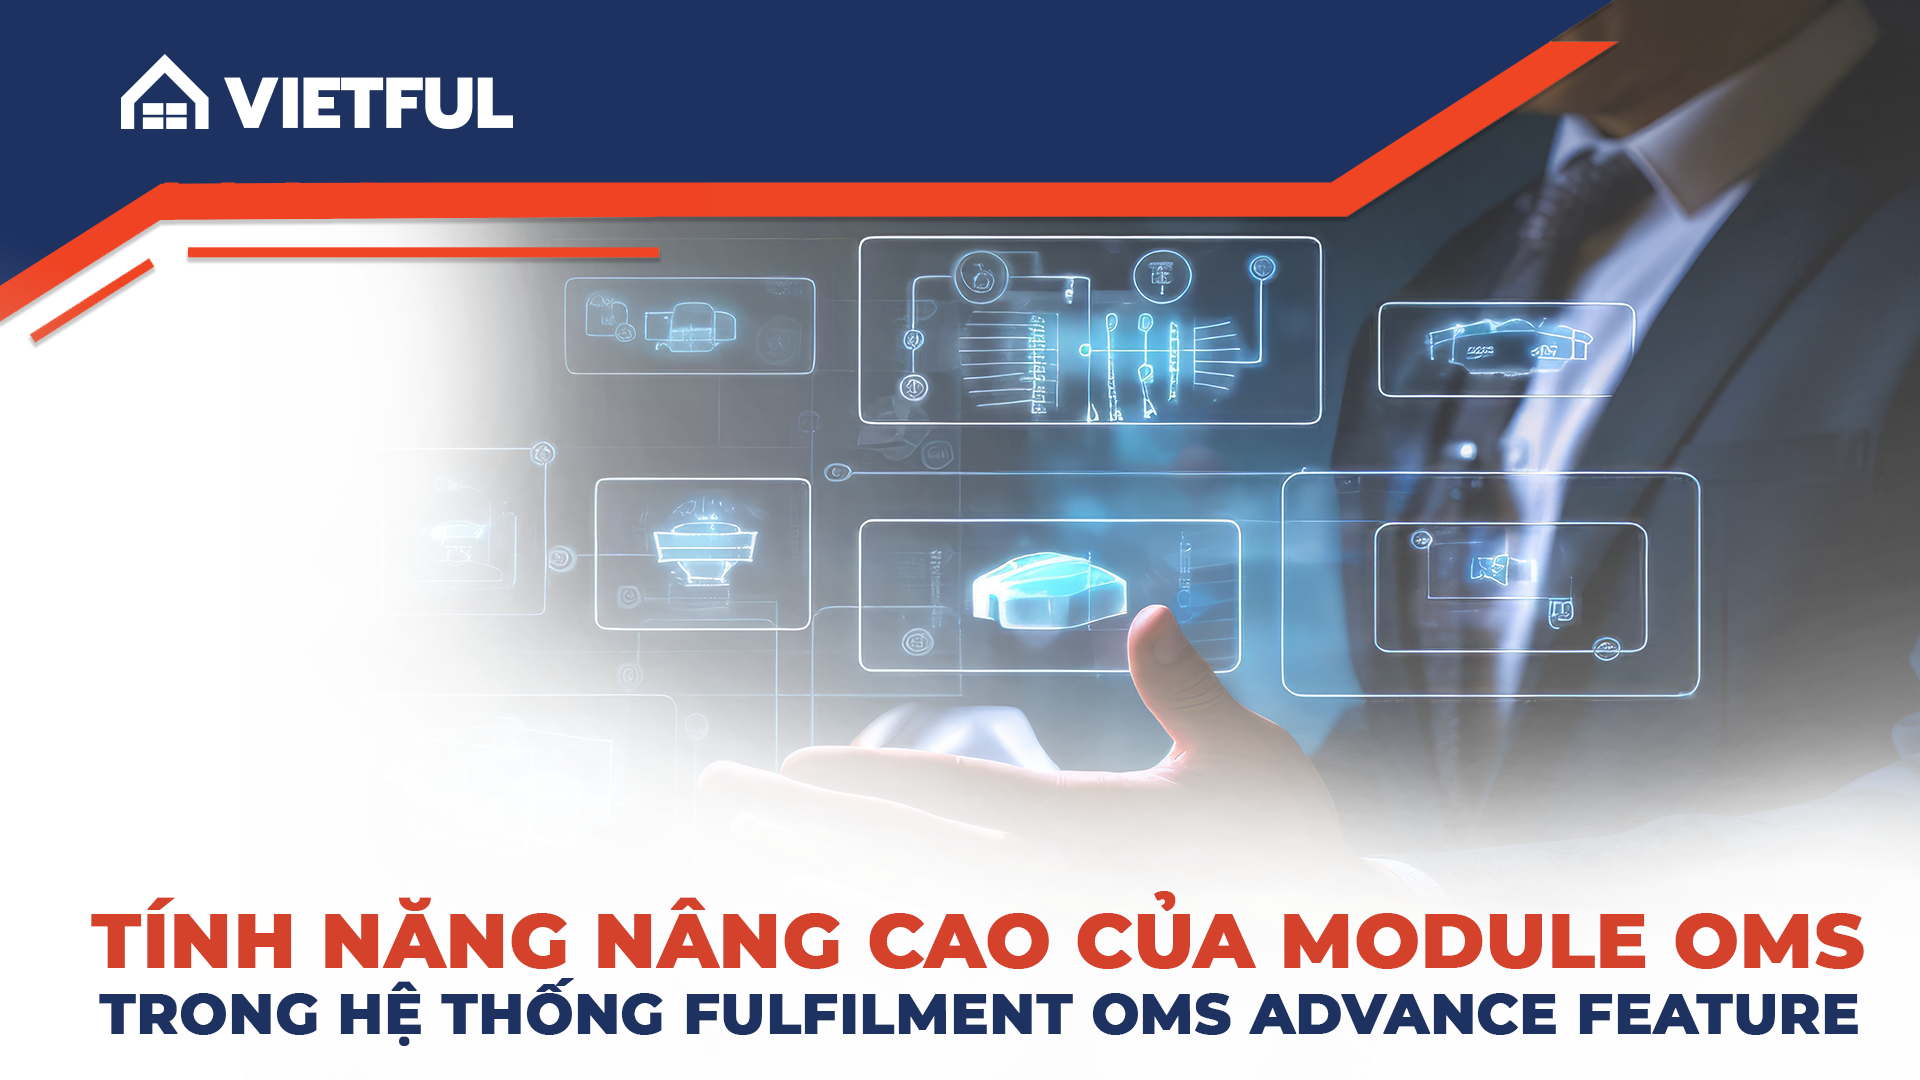 Tính năng nâng cao của module OMS trong hệ thống Fulfillment